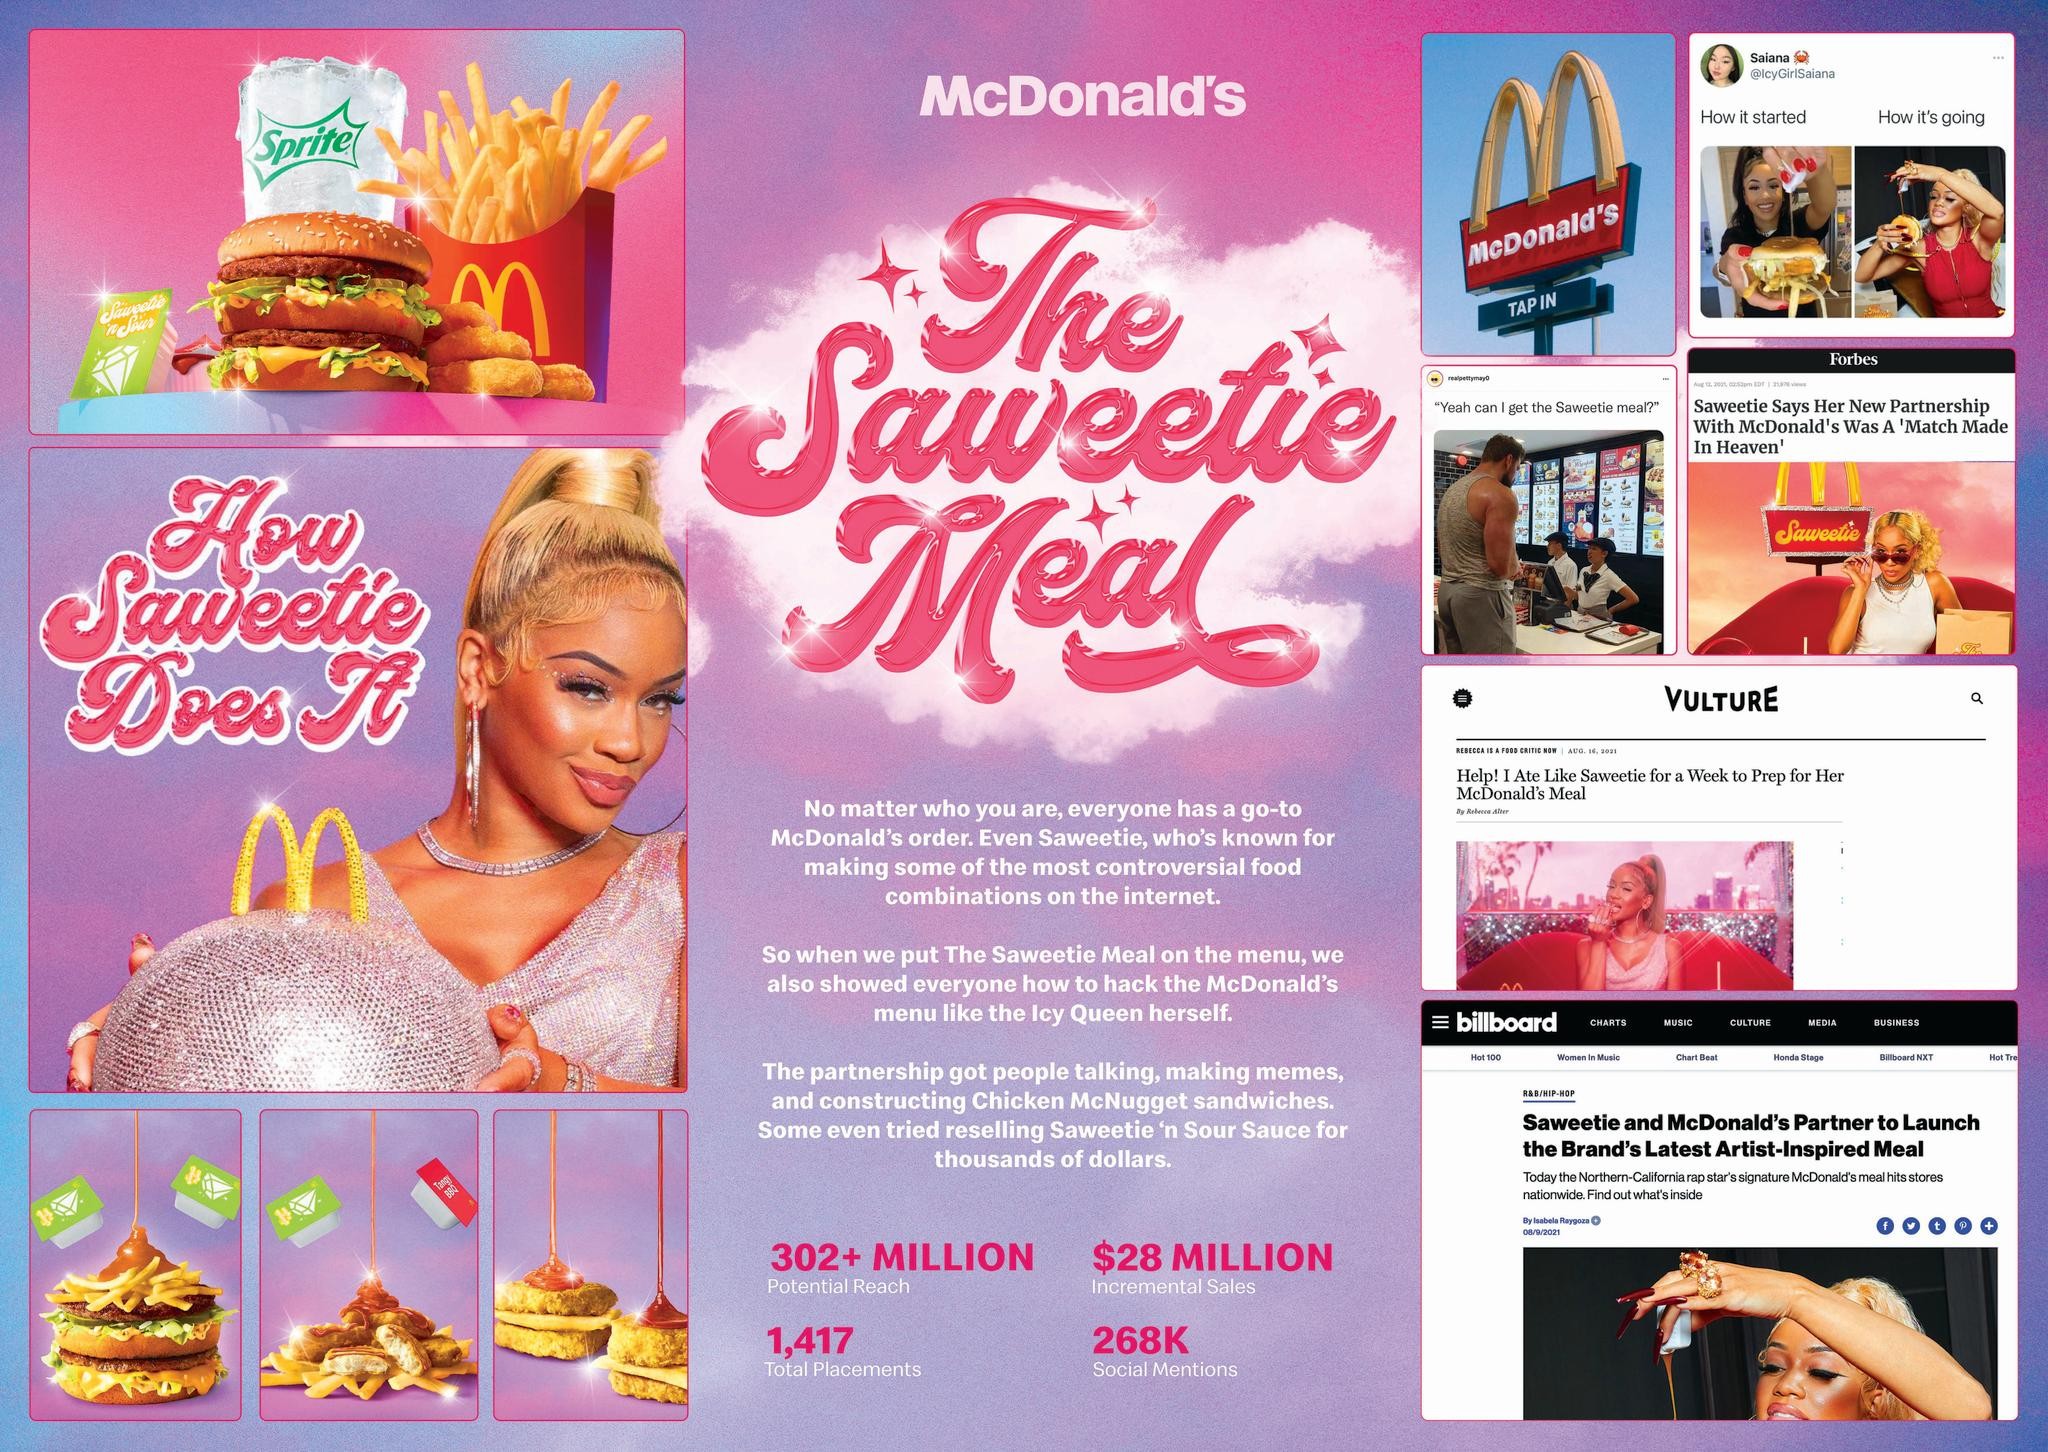 McDonald's: The Saweetie Meal